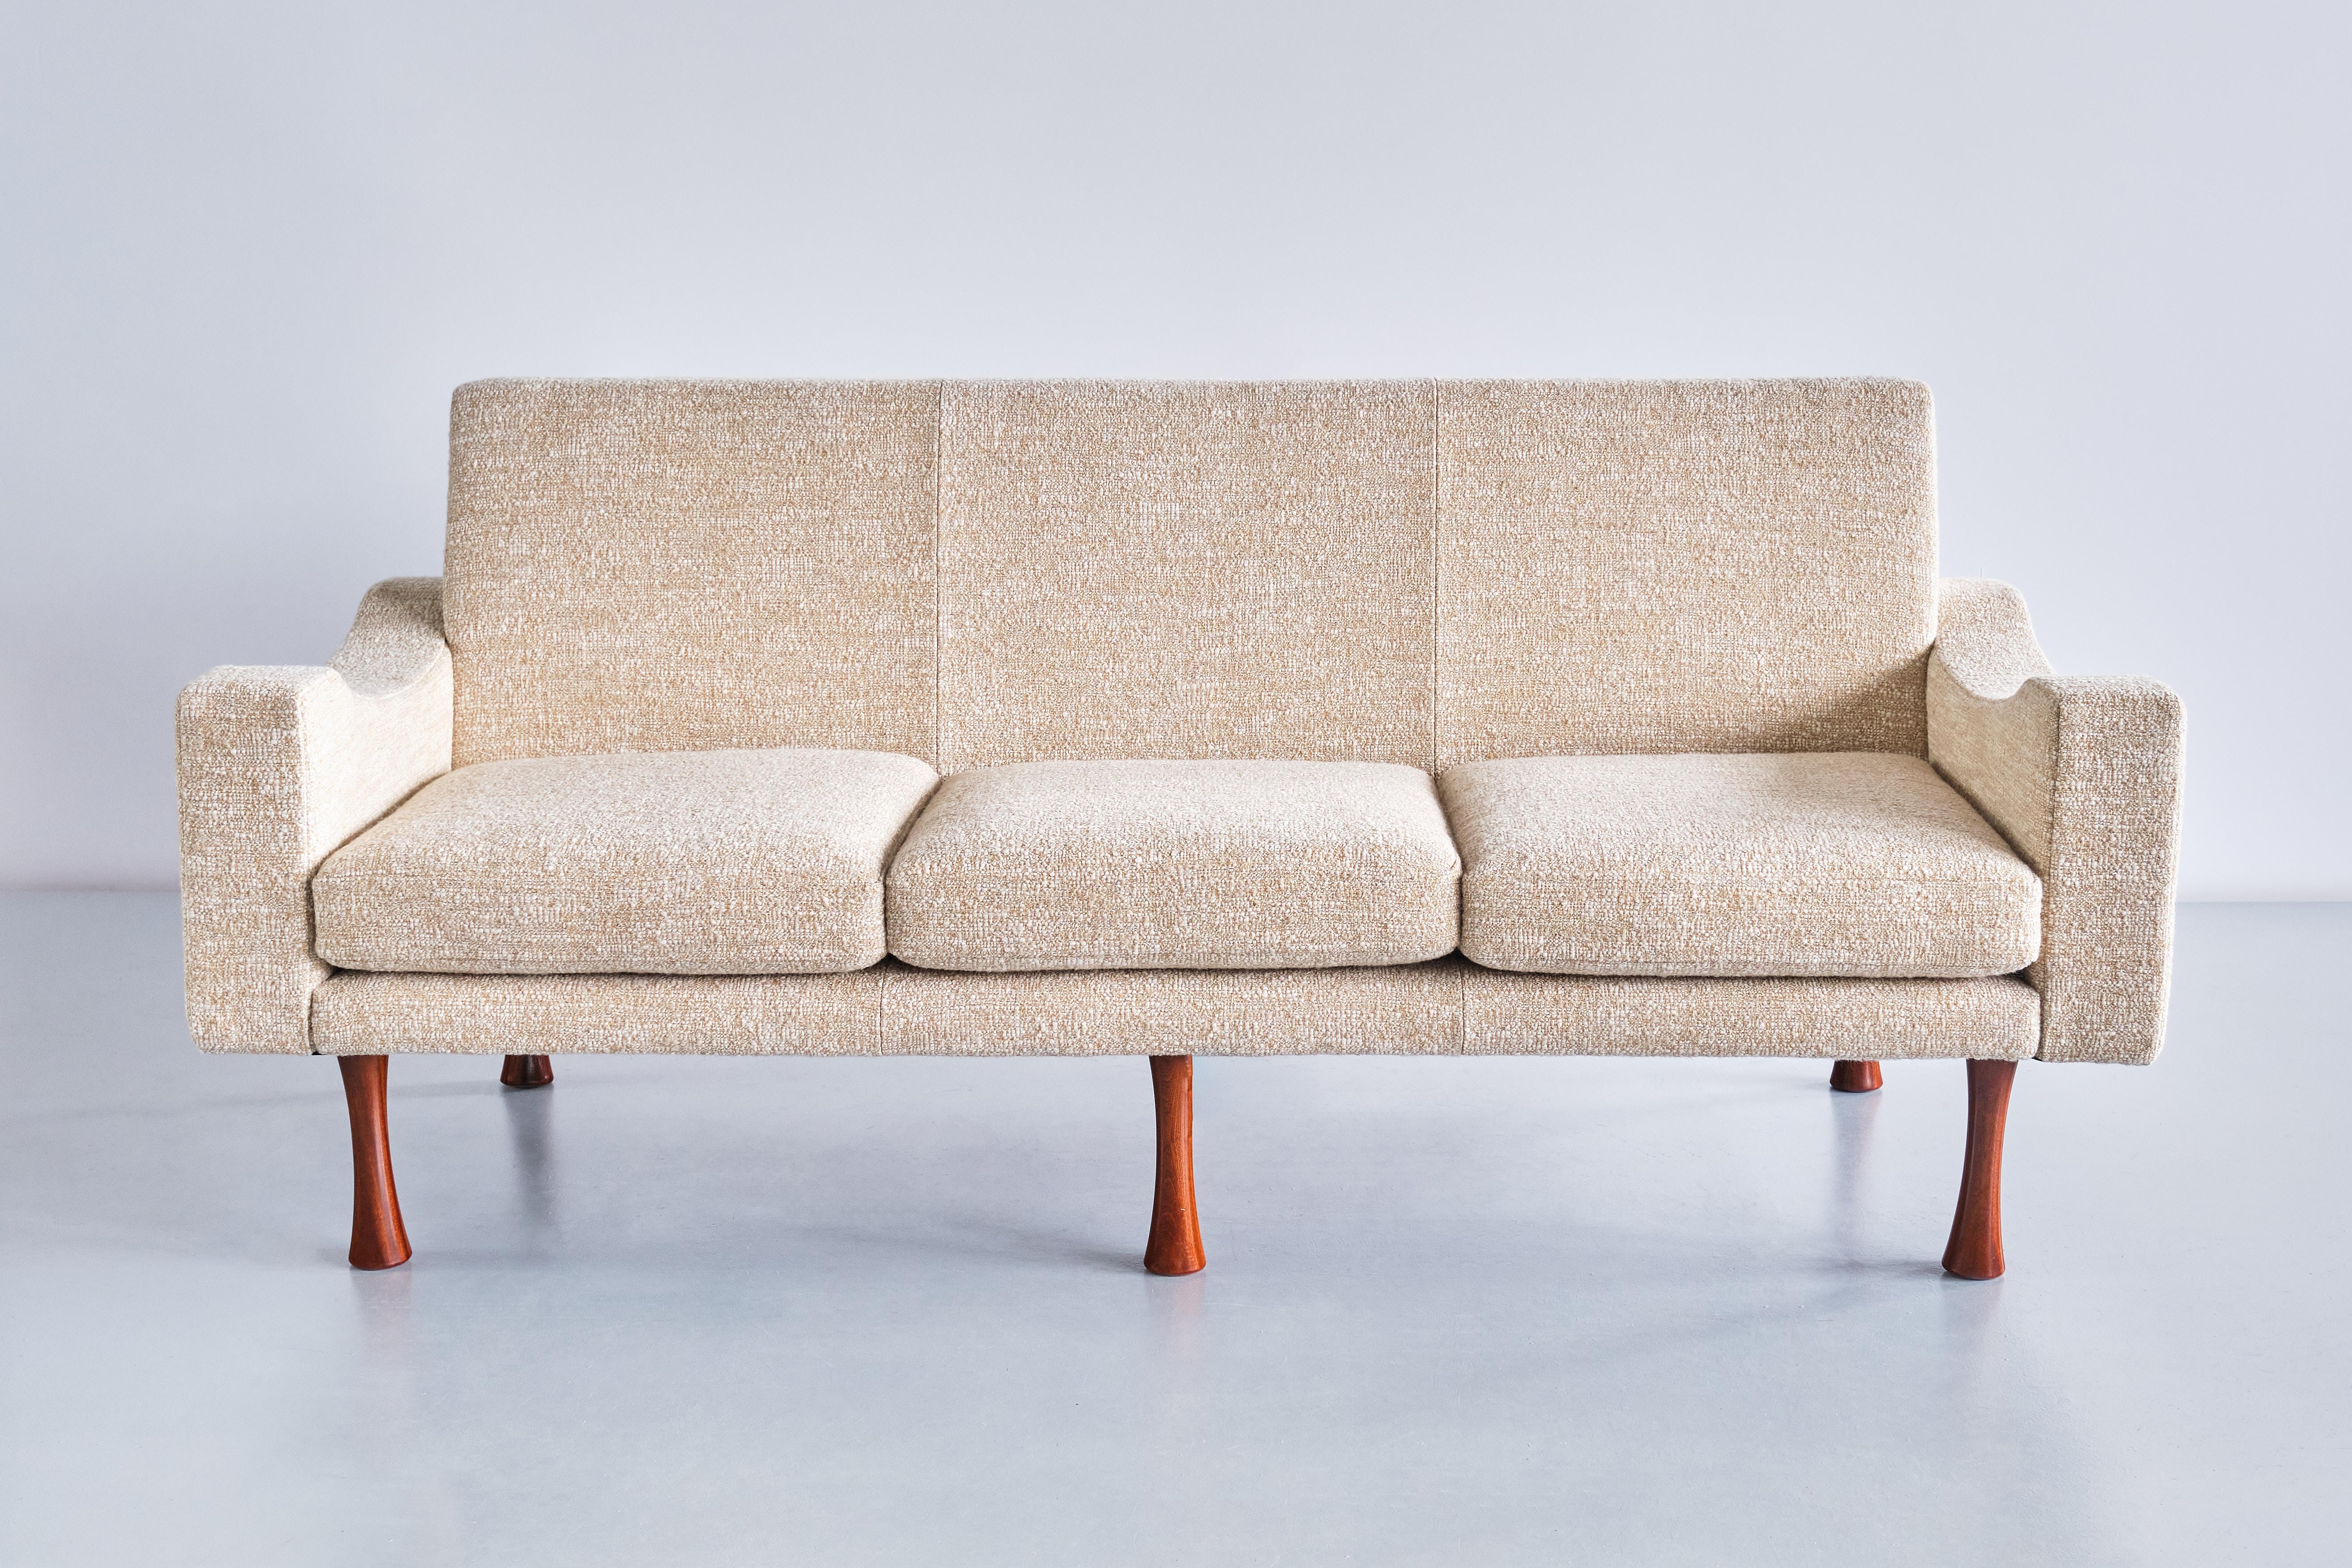 Dieses sehr seltene dreisitzige Sofa wurde von Angelo Mangiarotti entworfen und von dem italienischen Hersteller La Sorgente dei Mobili in den frühen 1970er Jahren produziert. Das Design ist geprägt von den geometrischen Formen des gepolsterten